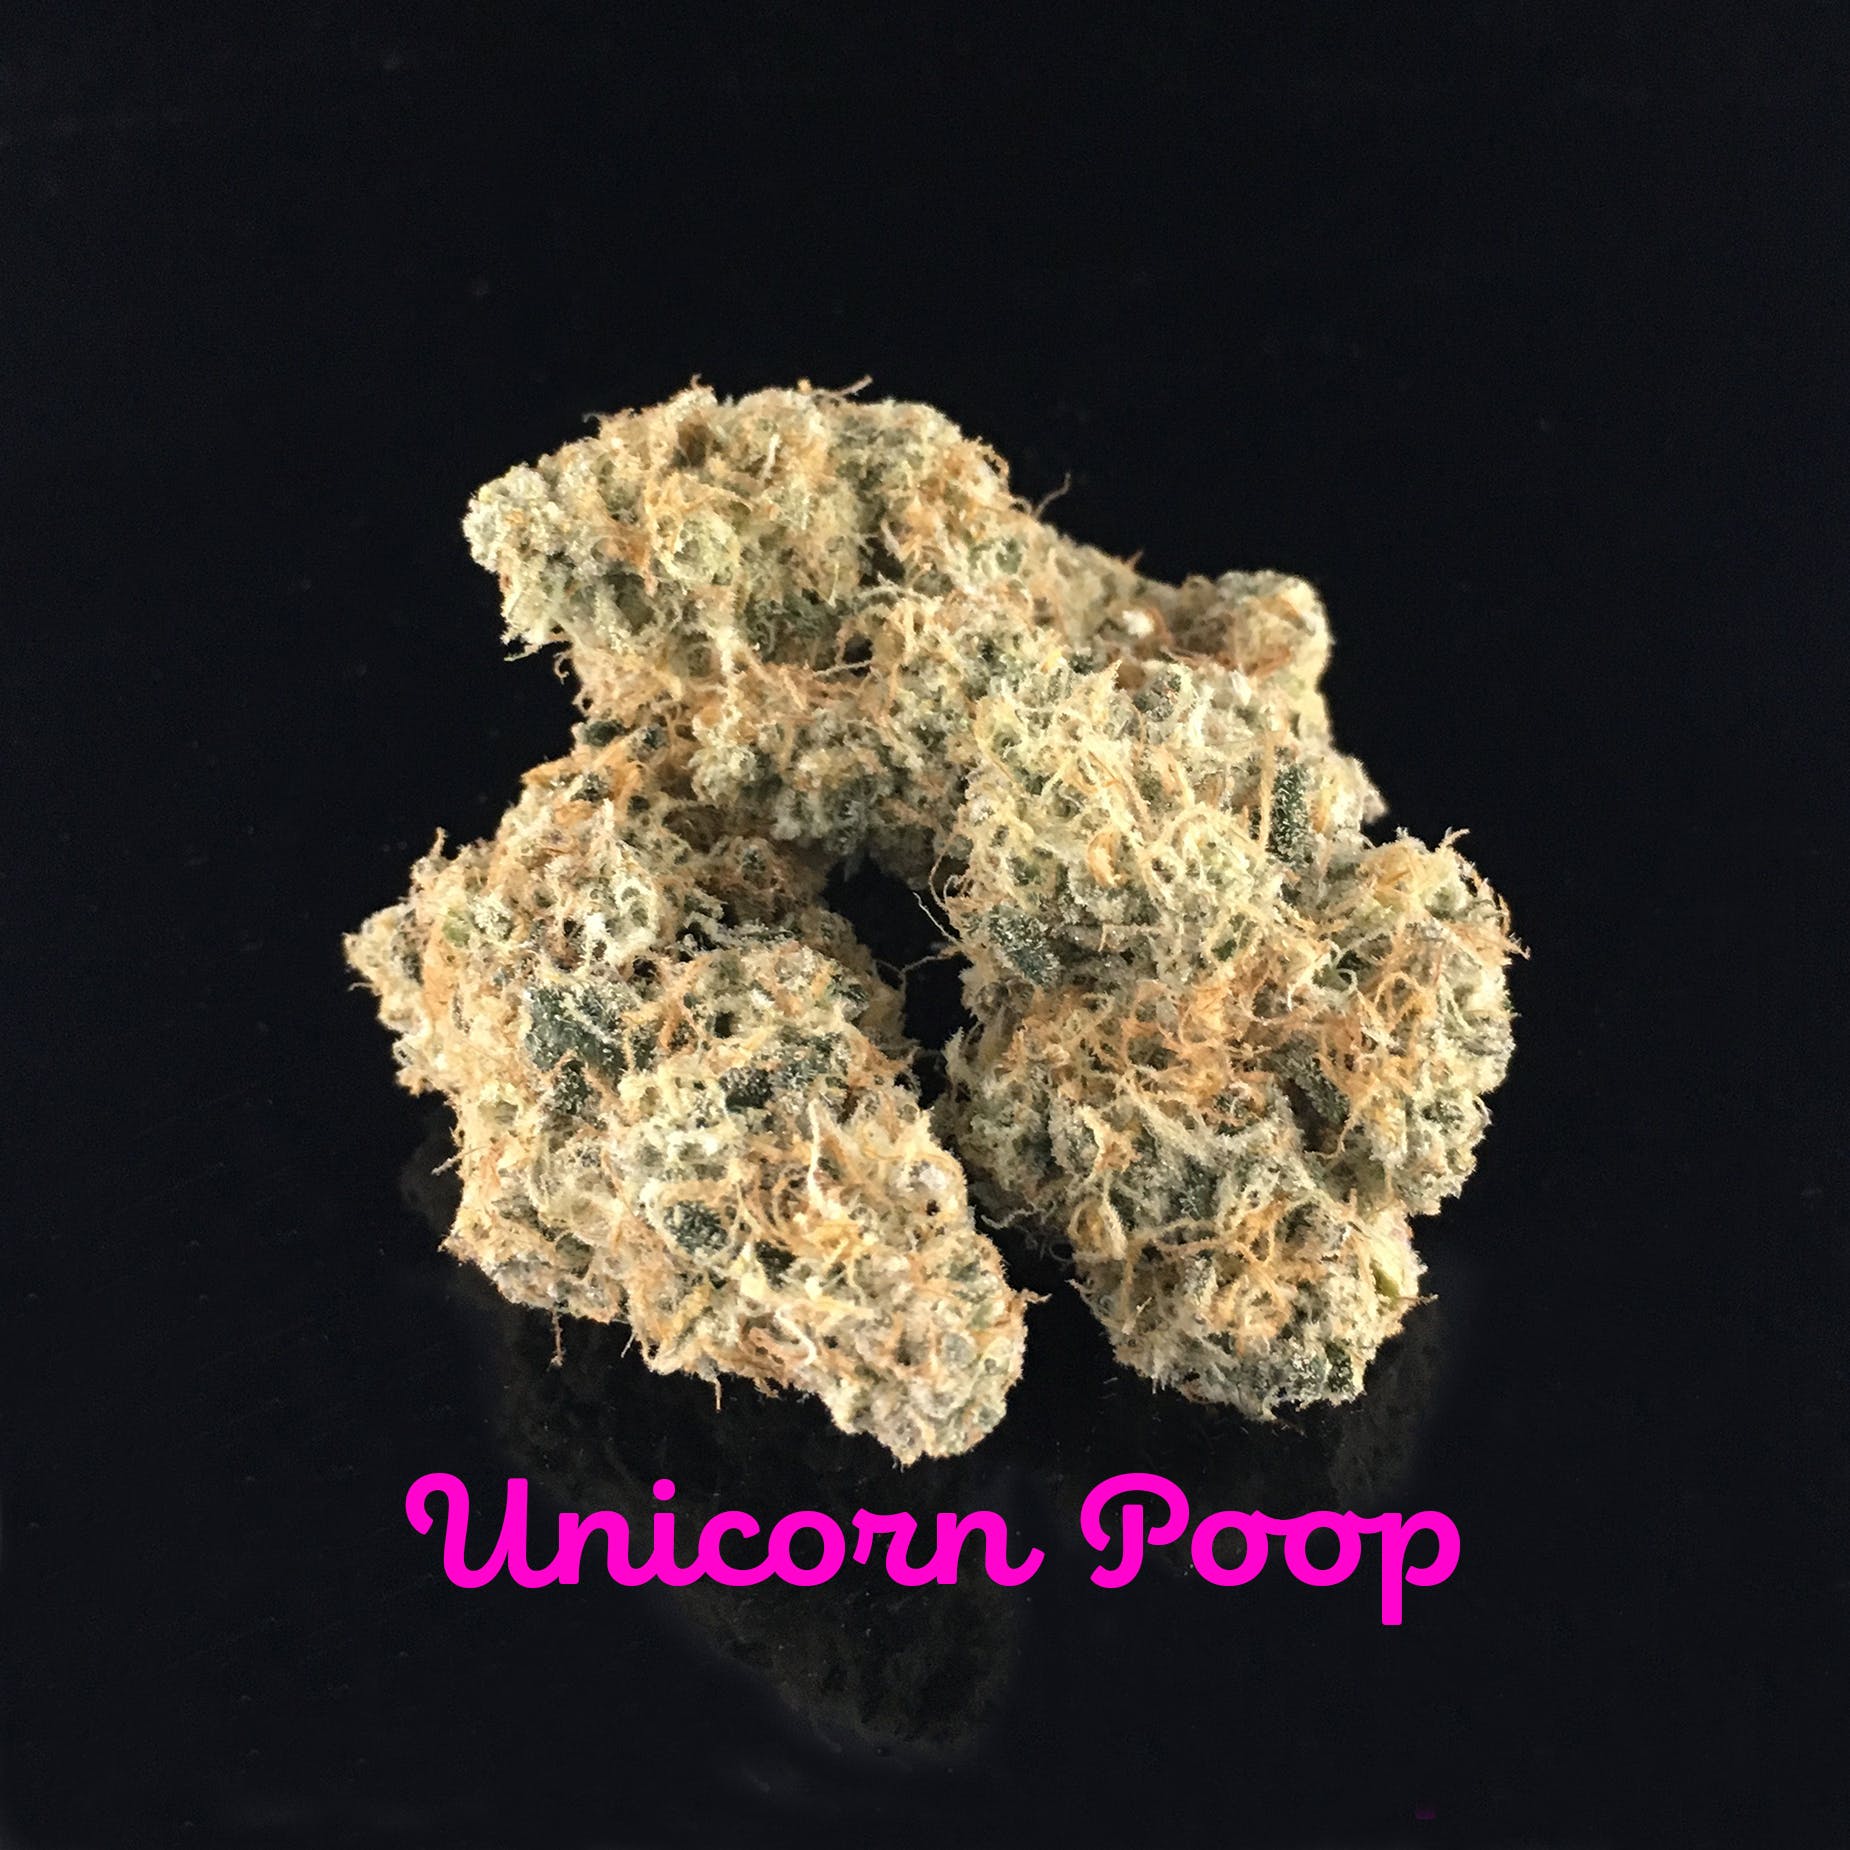 Unicorn Poop - 26.3% THC